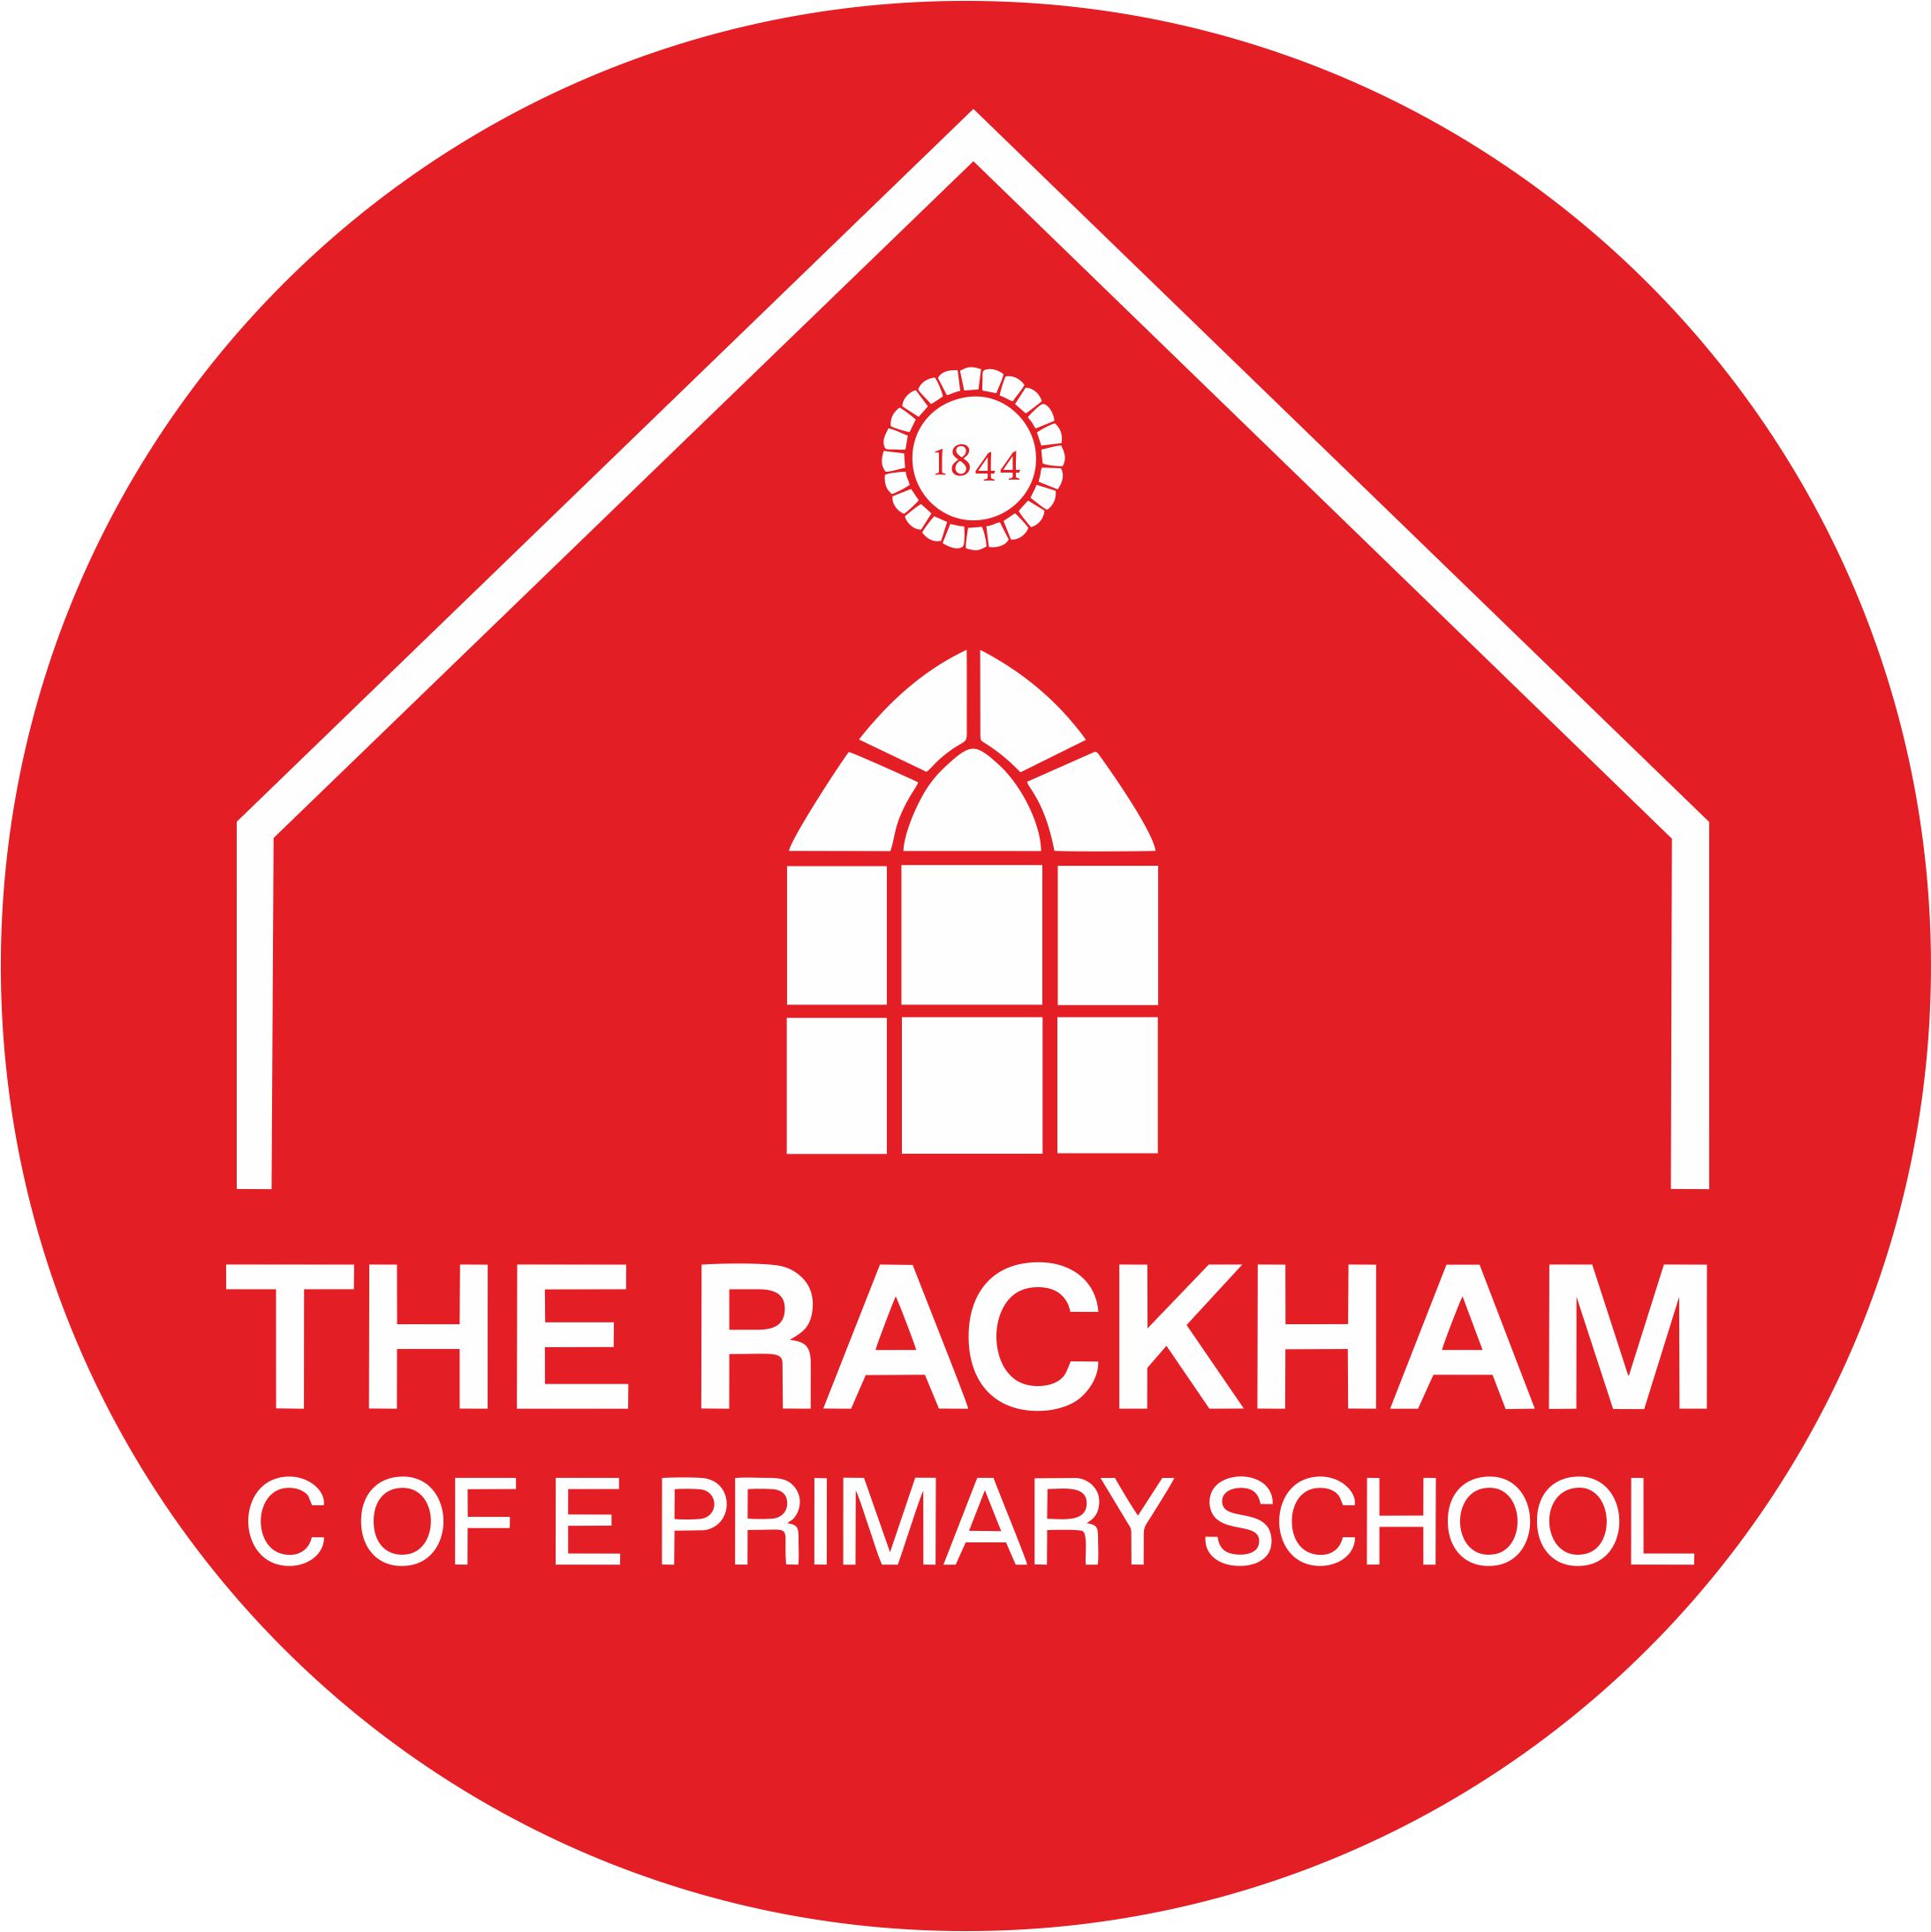 The Rackham C of E Primary School